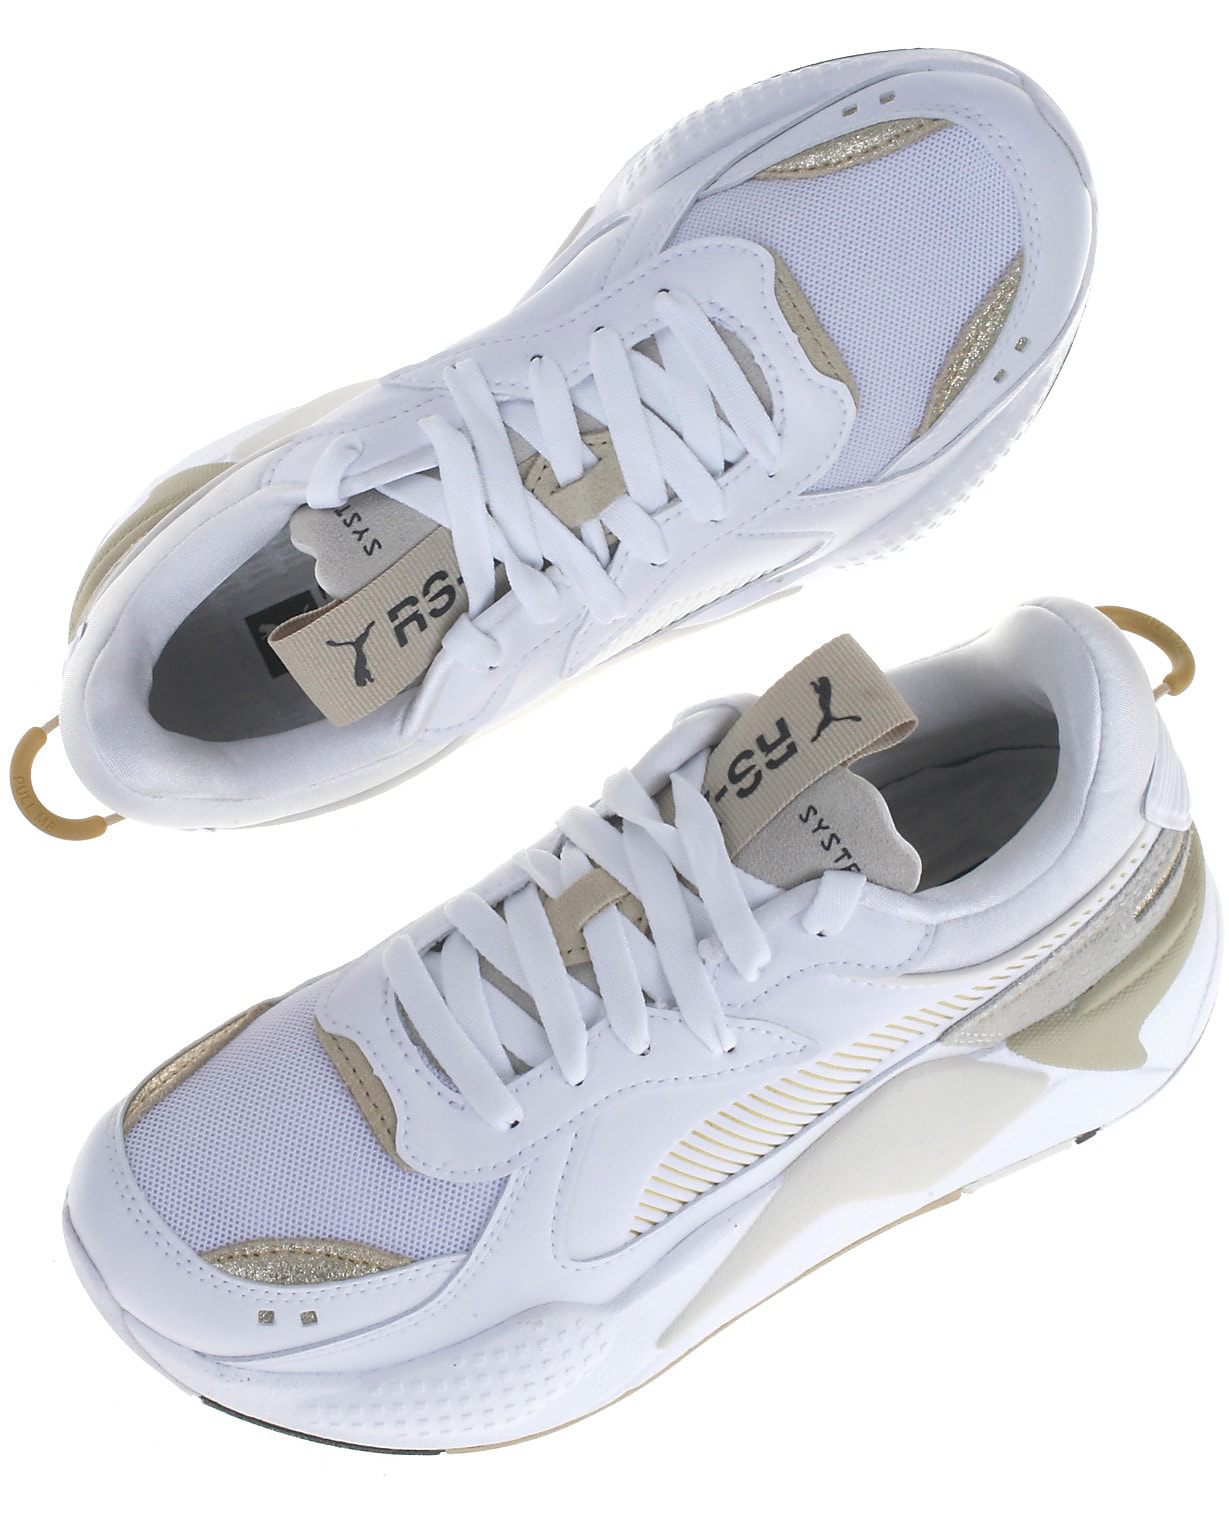 fornuft knap Reklame Puma sneakers, RS-X Mono, whitegold. Sneakers fra fede kvalitetsmærker